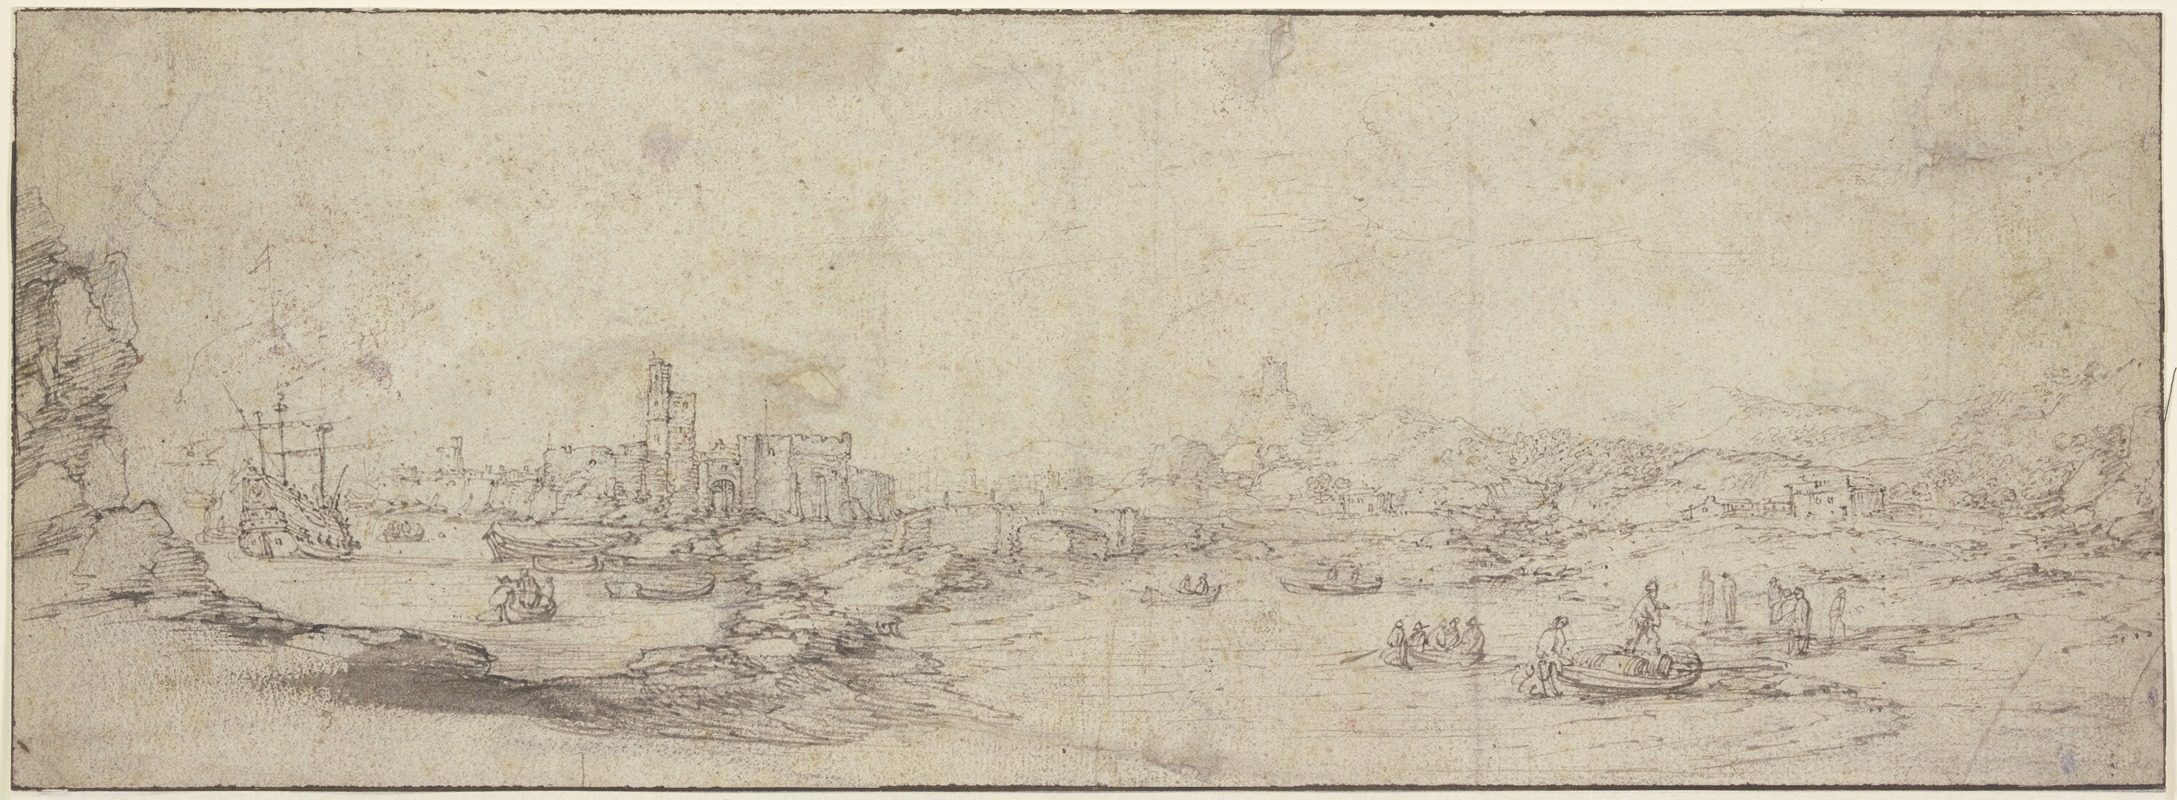 Claude Lorrain - Bei einer ruinierten Festung eine Brücke über einen mit Kähnen befahrenen Fluß, links ein großes Schiff